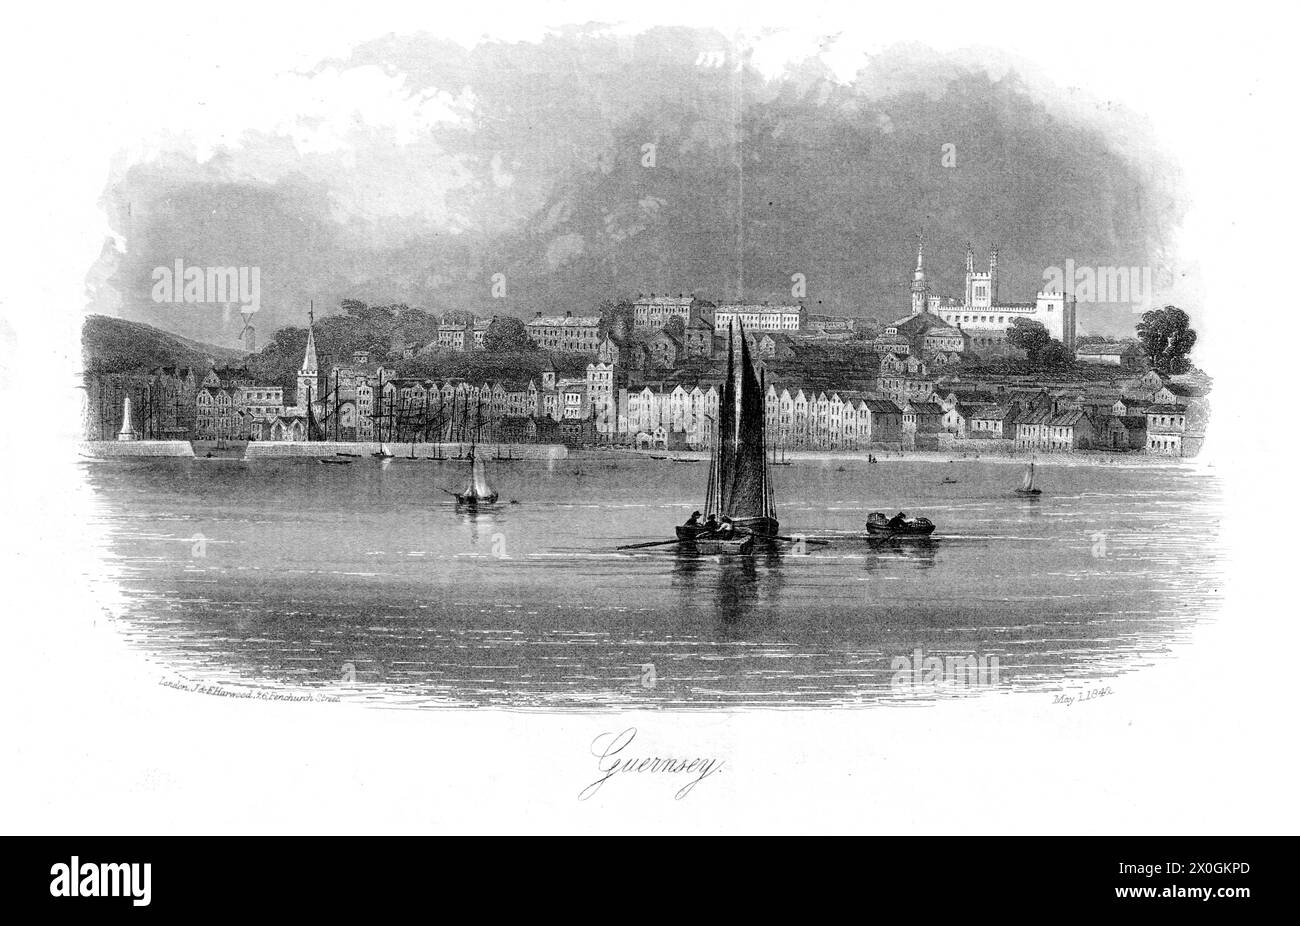 John & Frederick Harwood, 26 Fenchurch Street, Londres - vue de St Peter Port, Guernesey, depuis la mer. Trois bateaux au premier plan. Gravure sur acier vignette 1842 Banque D'Images